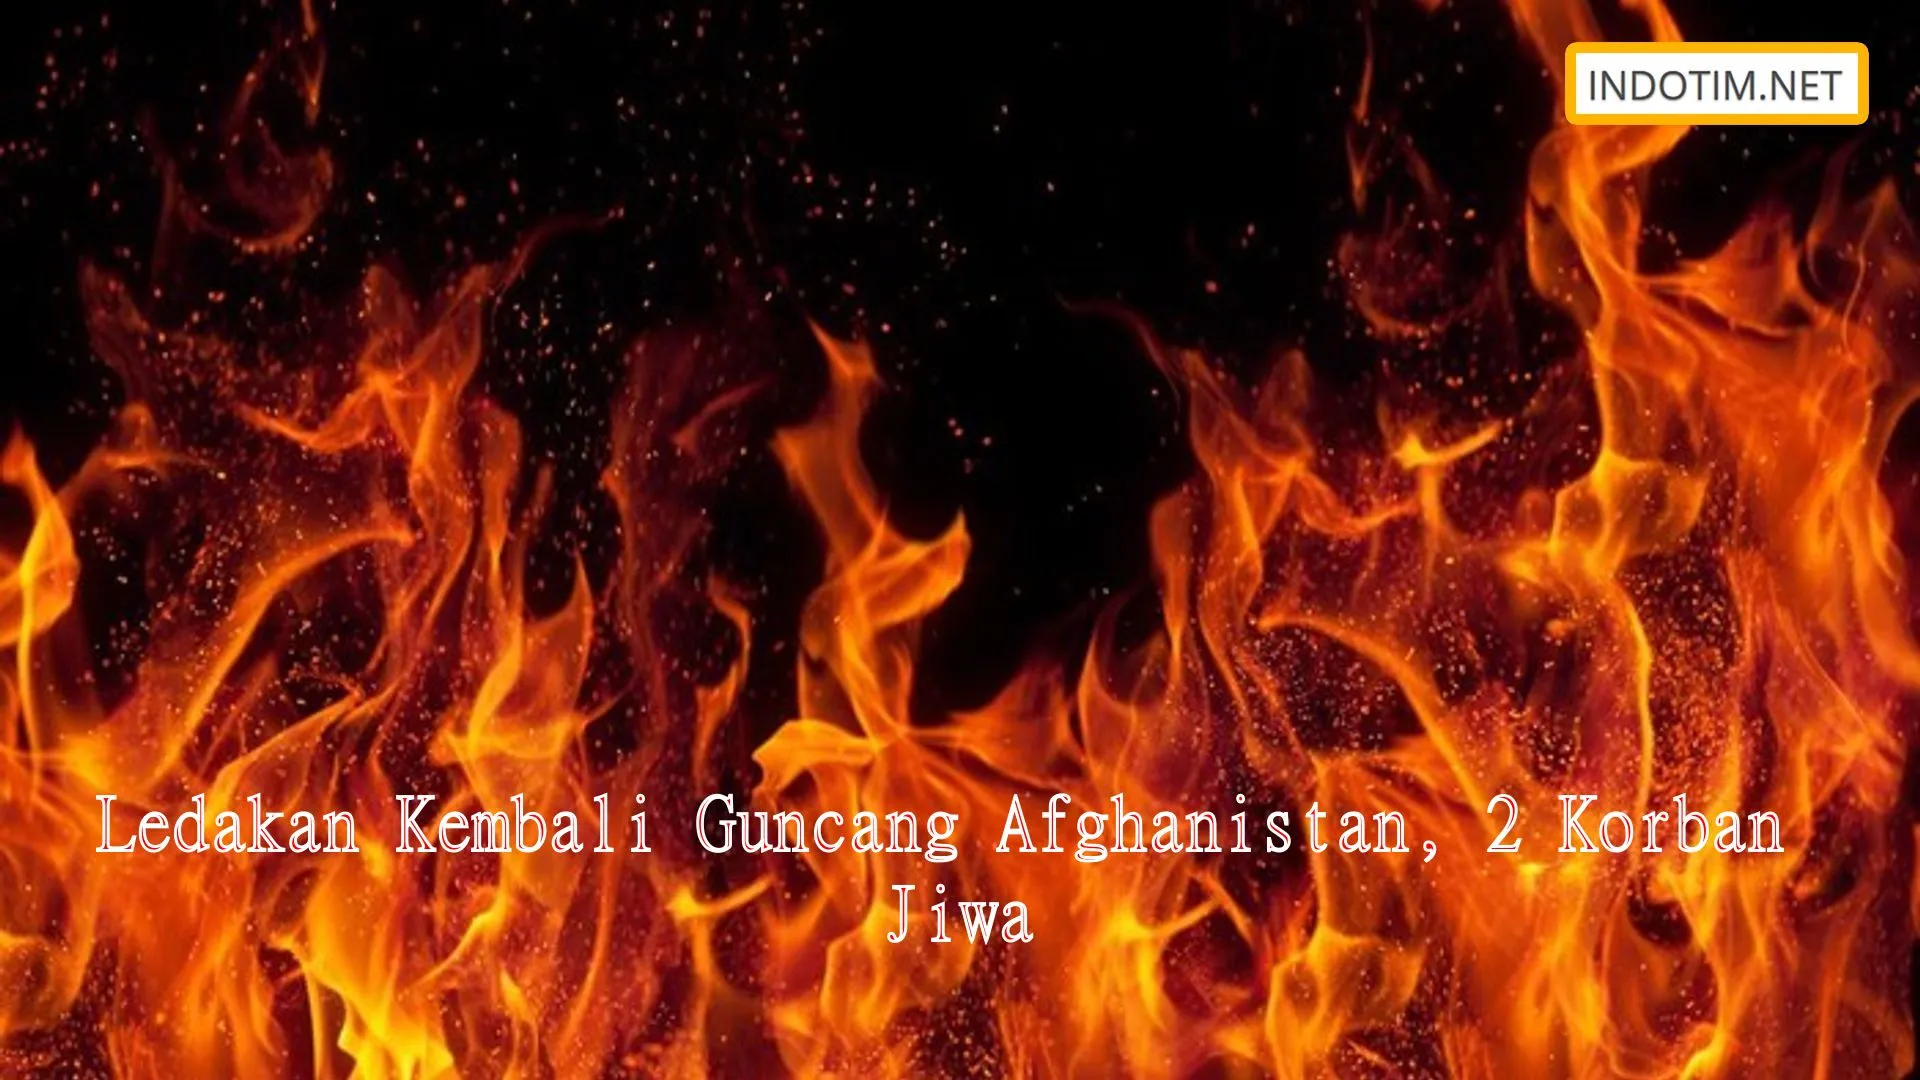 Ledakan Kembali Guncang Afghanistan, 2 Korban Jiwa